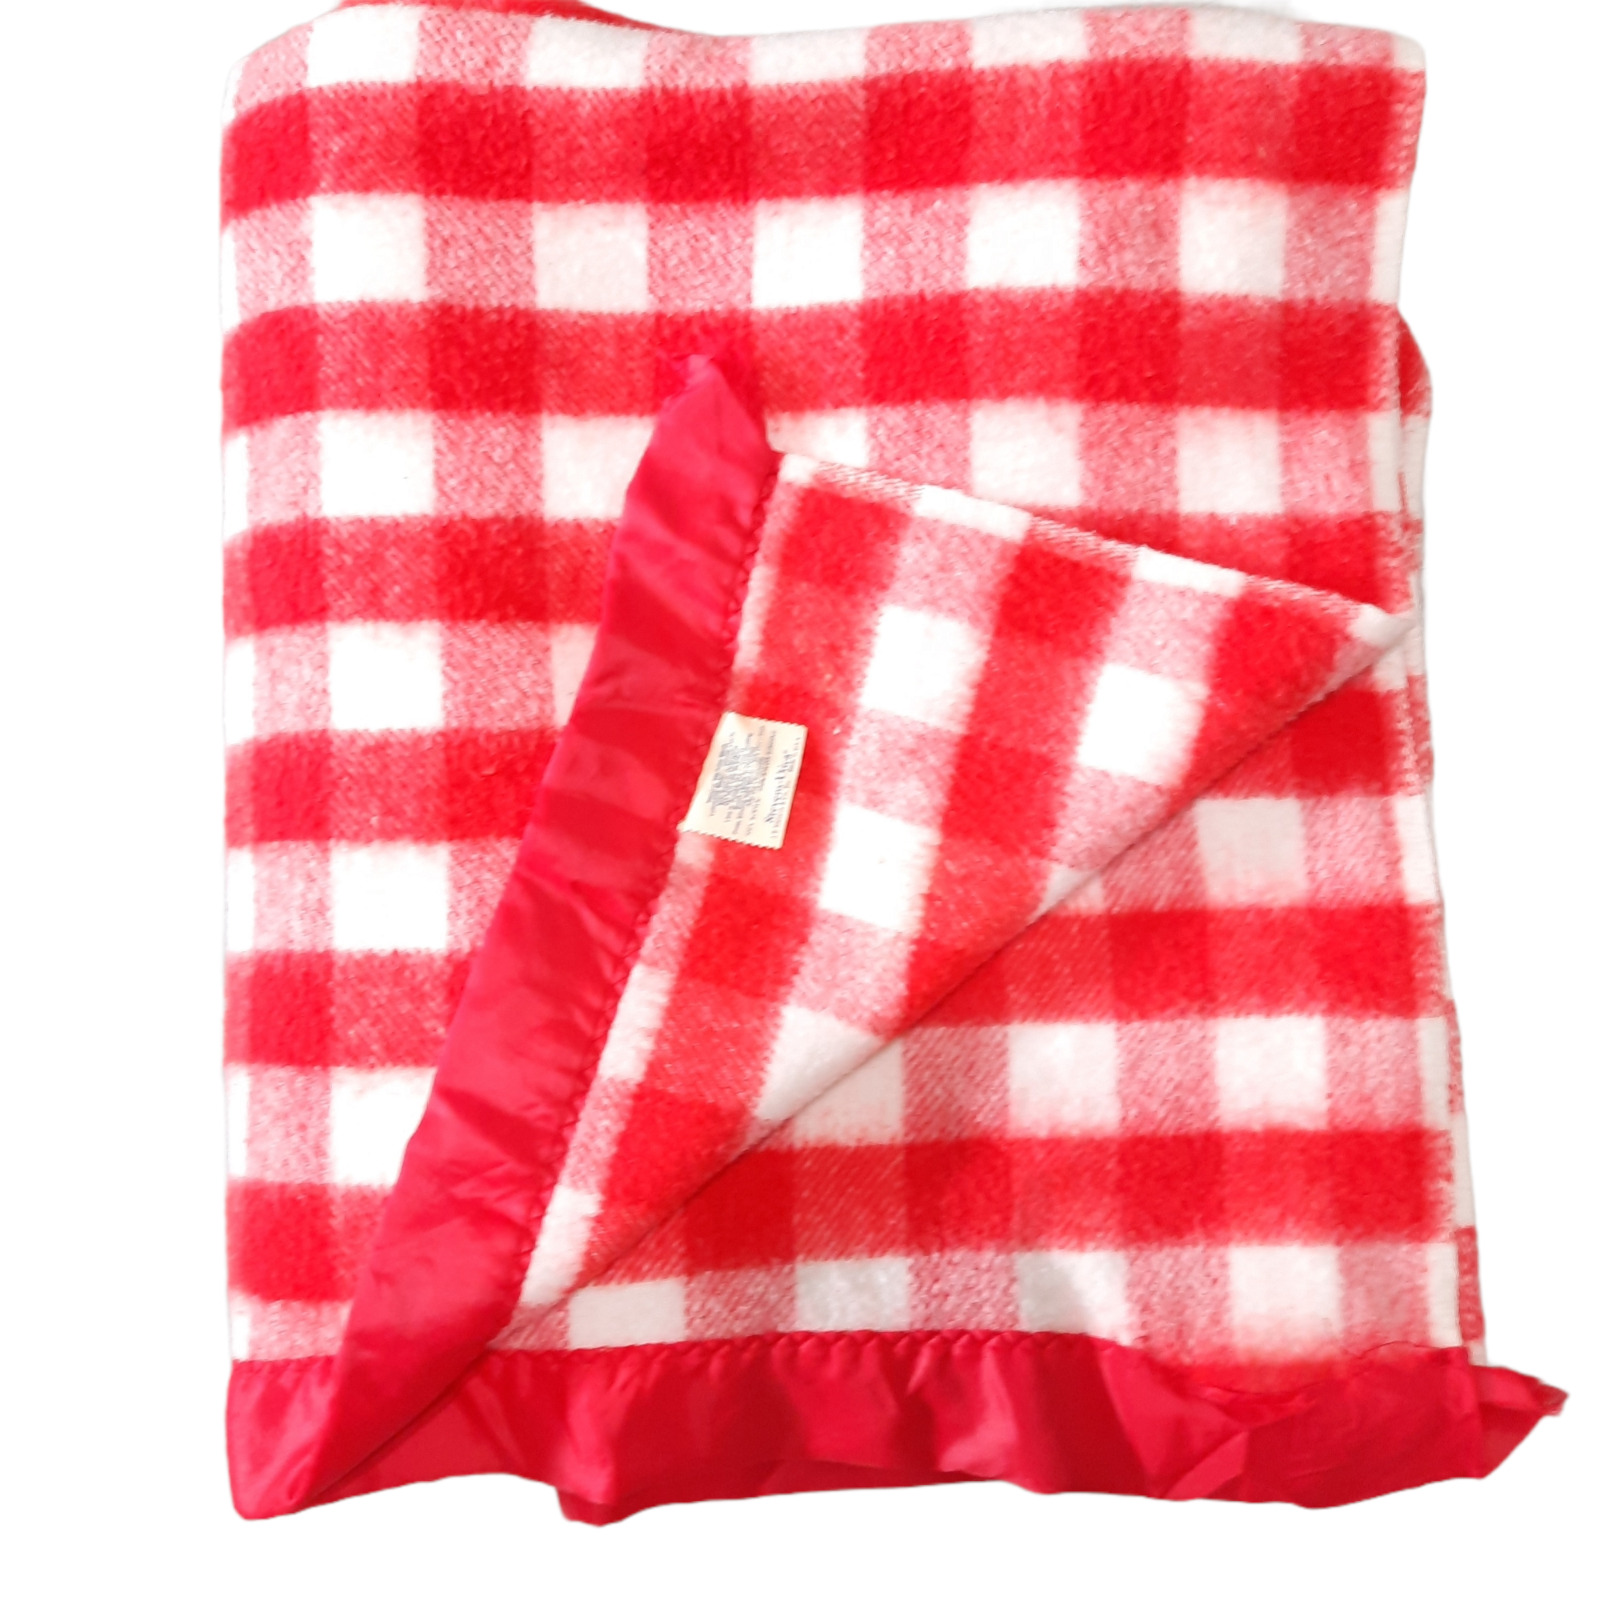 Vintage Stevens Utica Plaid Acrylic Blanket red white Nylon edge gingham picnic